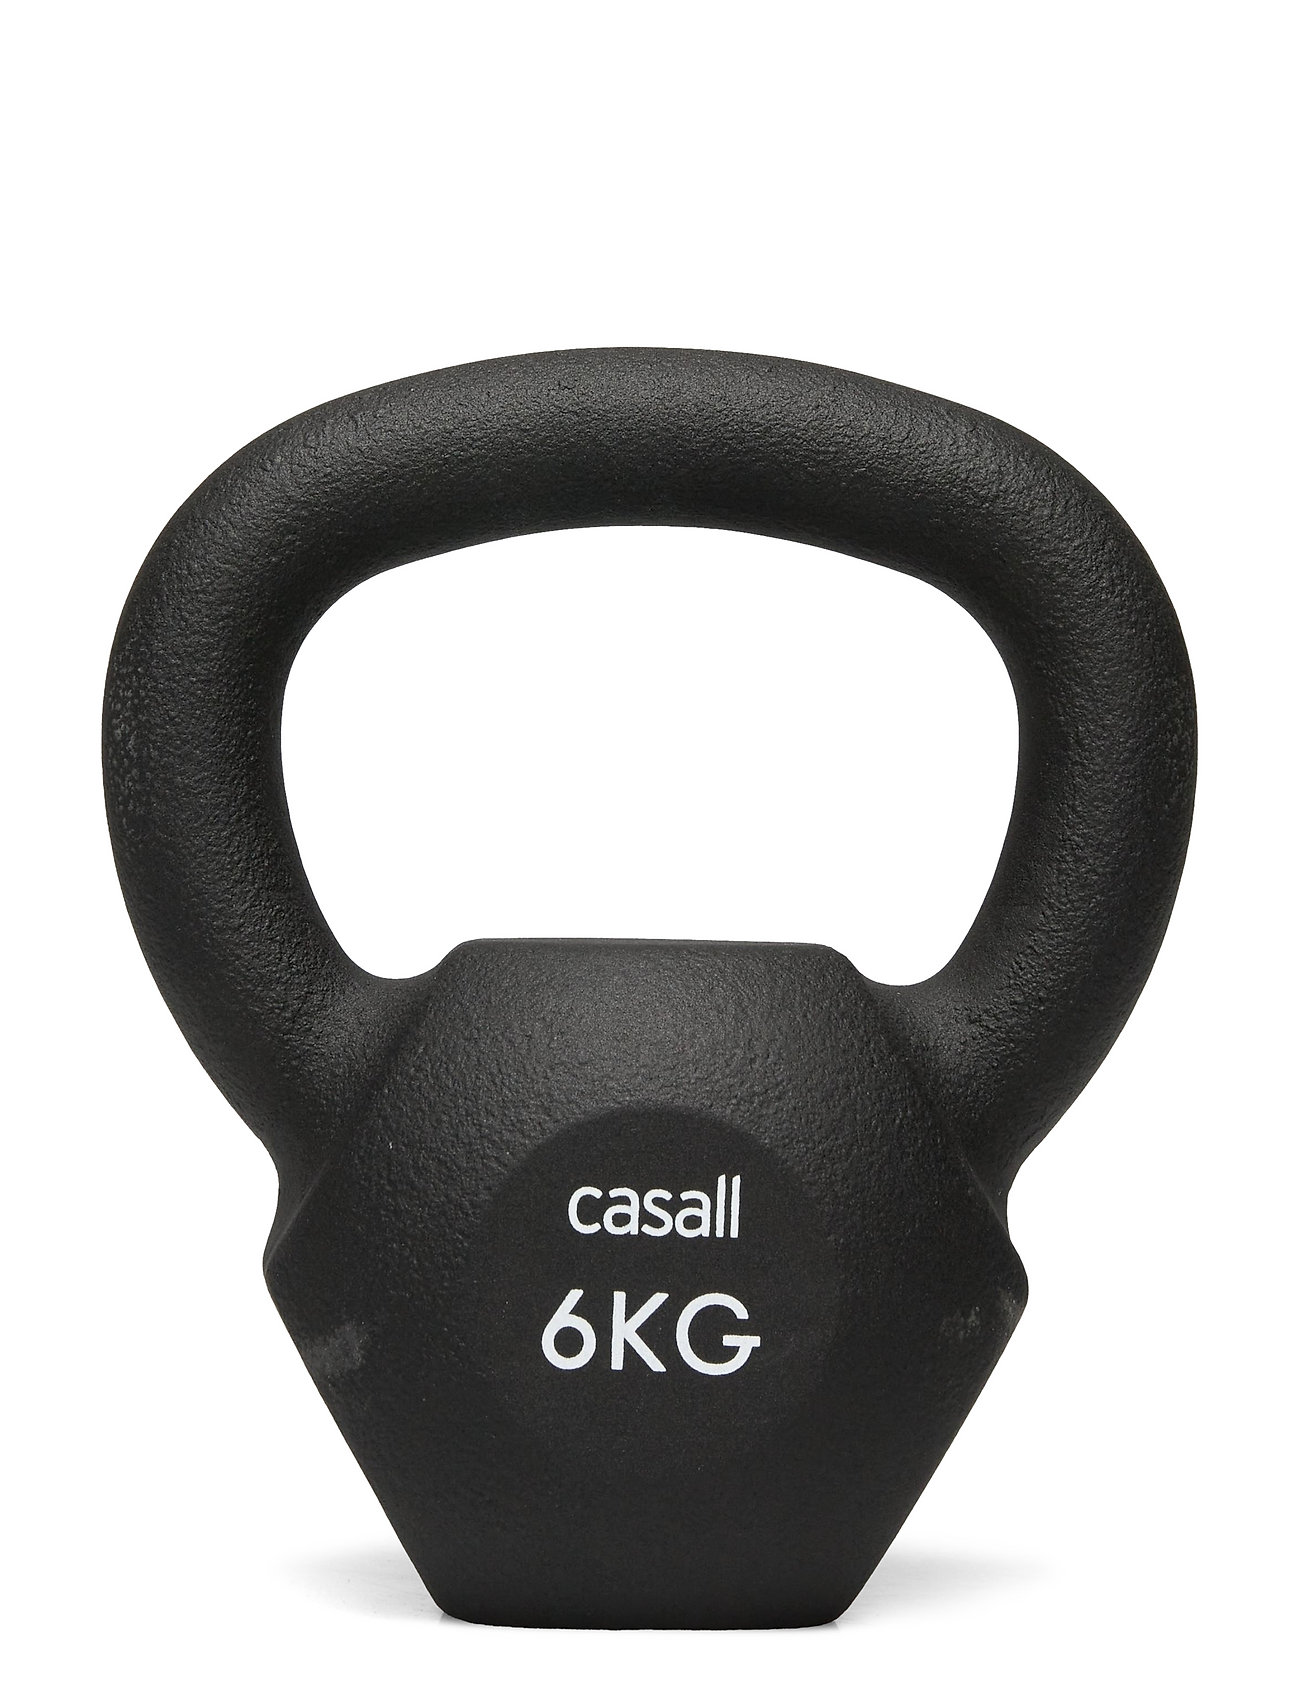 Casall Classic Kettlebell 6kg - Sports Equipment